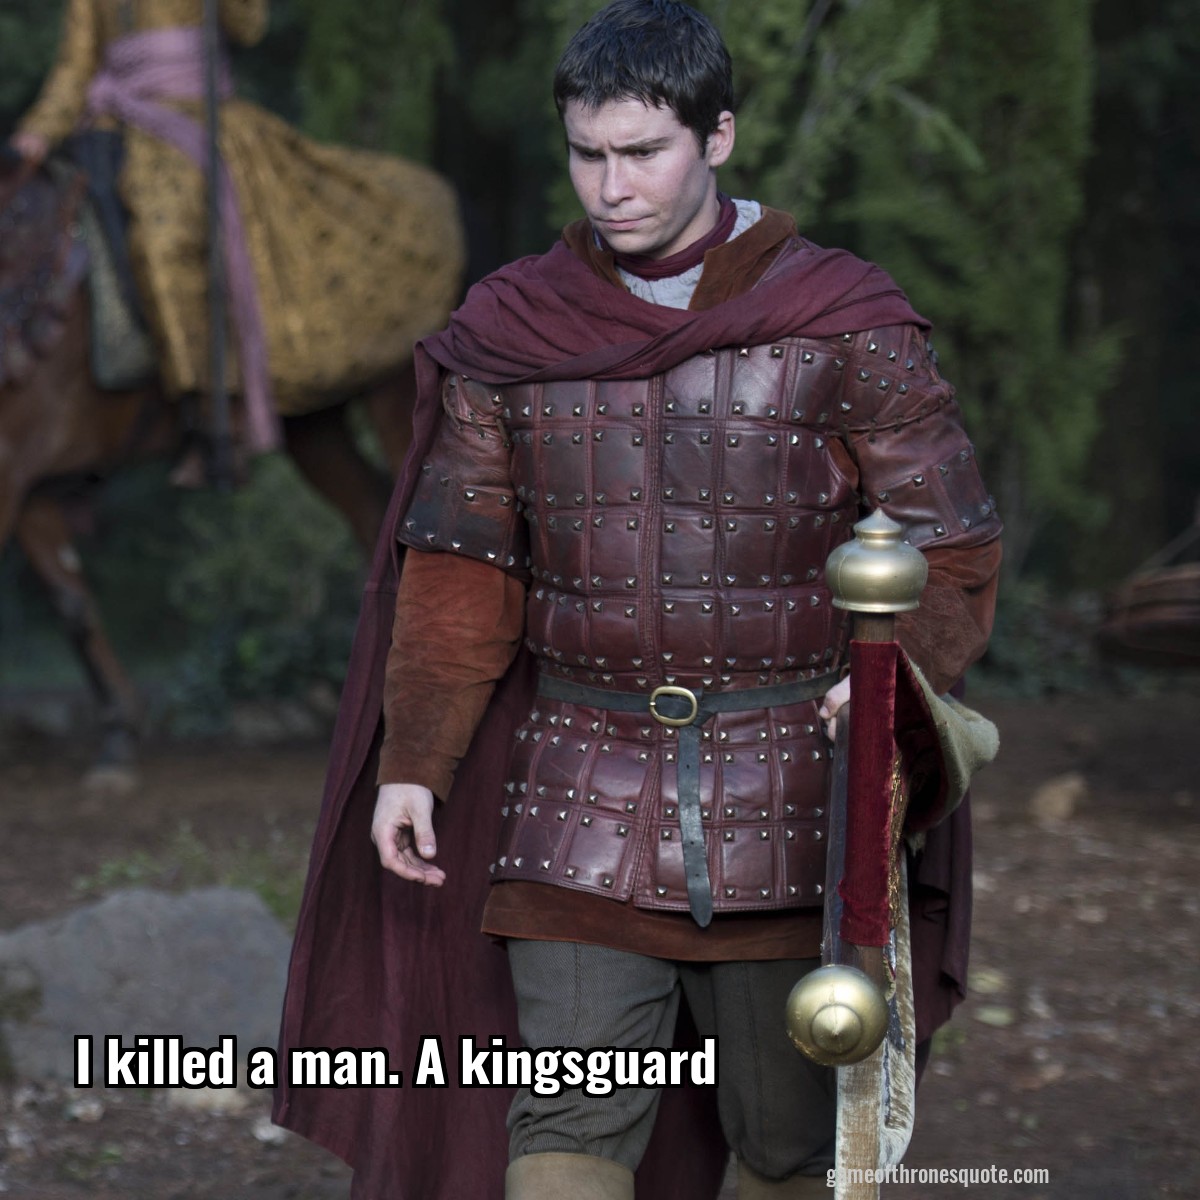 I killed a man. A kingsguard